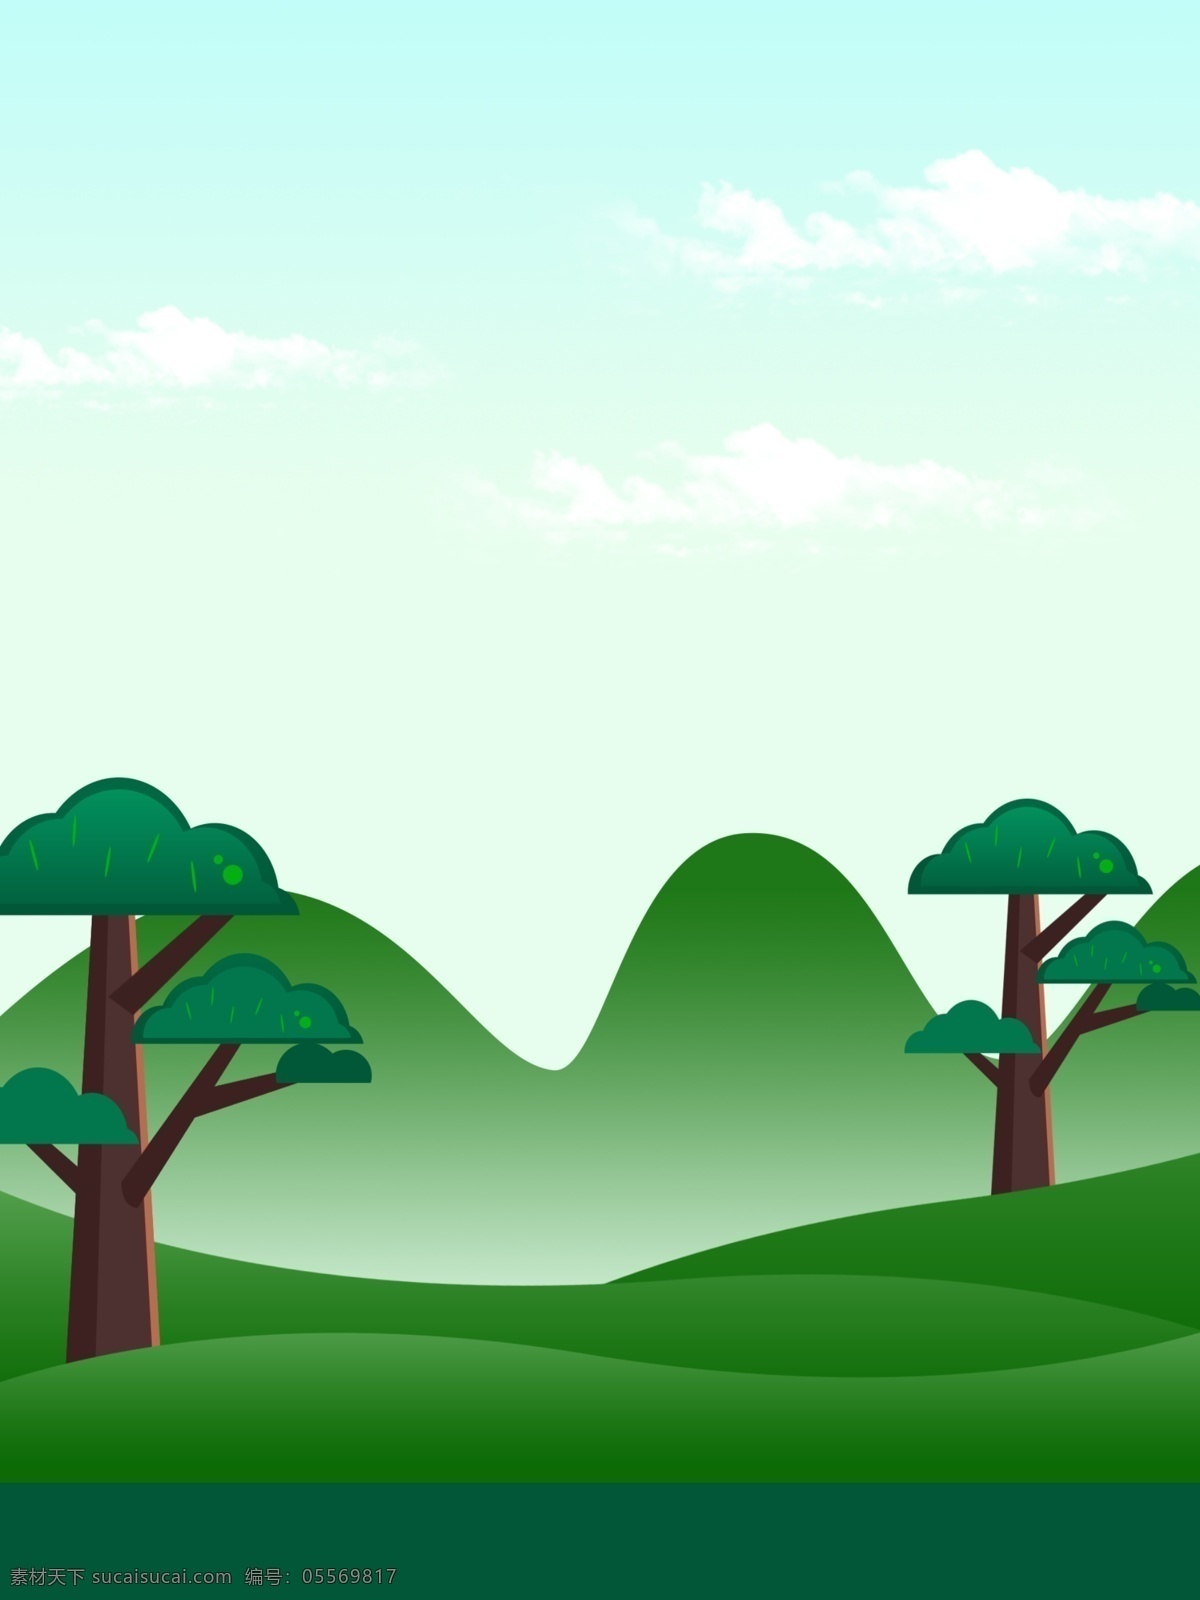 手绘 树林 山峰 背景 绿色背景 色彩 背景素材 广告背景 彩色背景